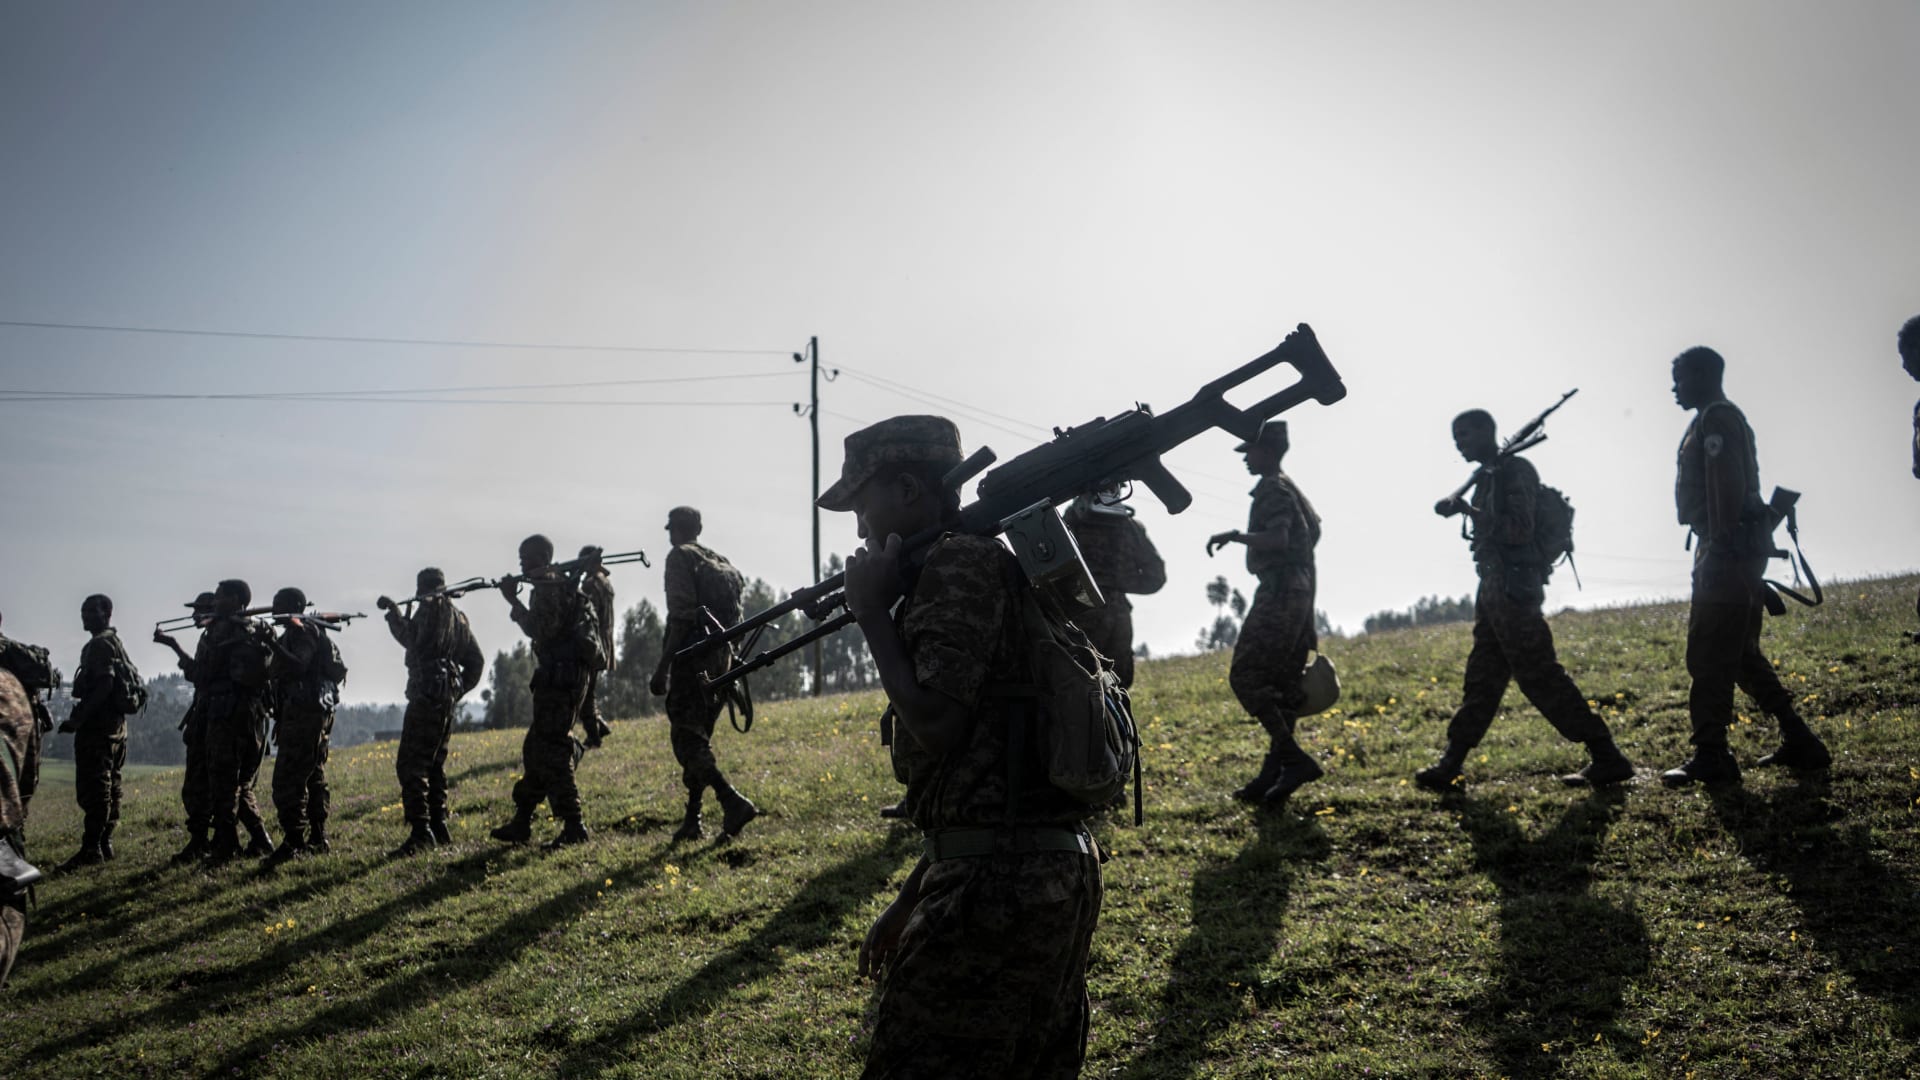 قوات حكومية إثيوبية تسير في طابور خلال دورة تدريبية في حقل دابات، على بعد 70 كيلومترًا شمال شرق مدينة جوندار، إثيوبيا ، 15 سبتمبر 2021